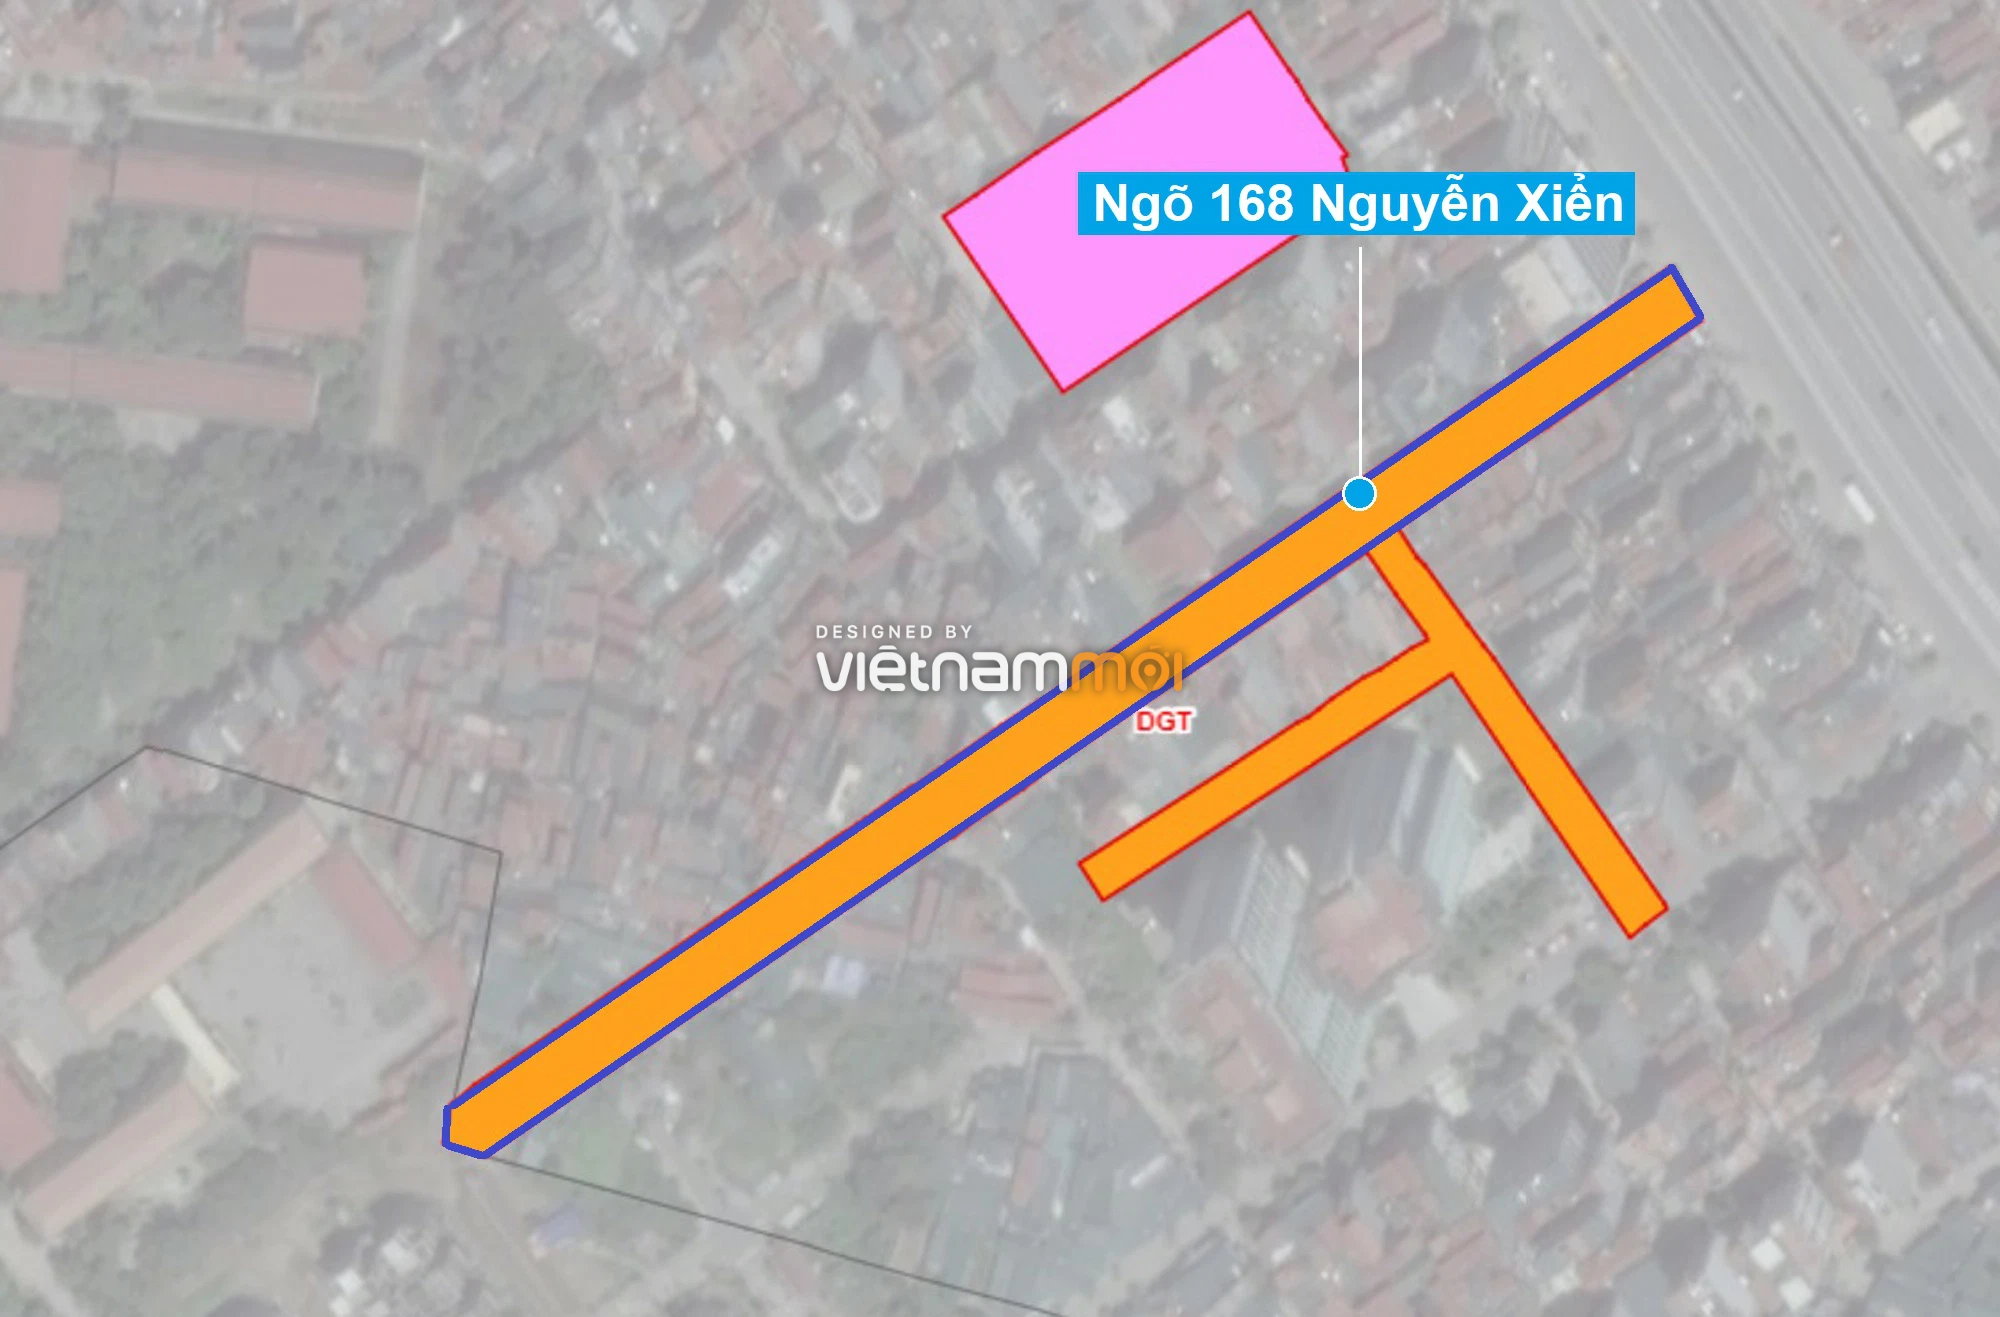 Những khu đất sắp thu hồi để mở đường ở quận Thanh Xuân, Hà Nội (phần 2) - Ảnh 1.